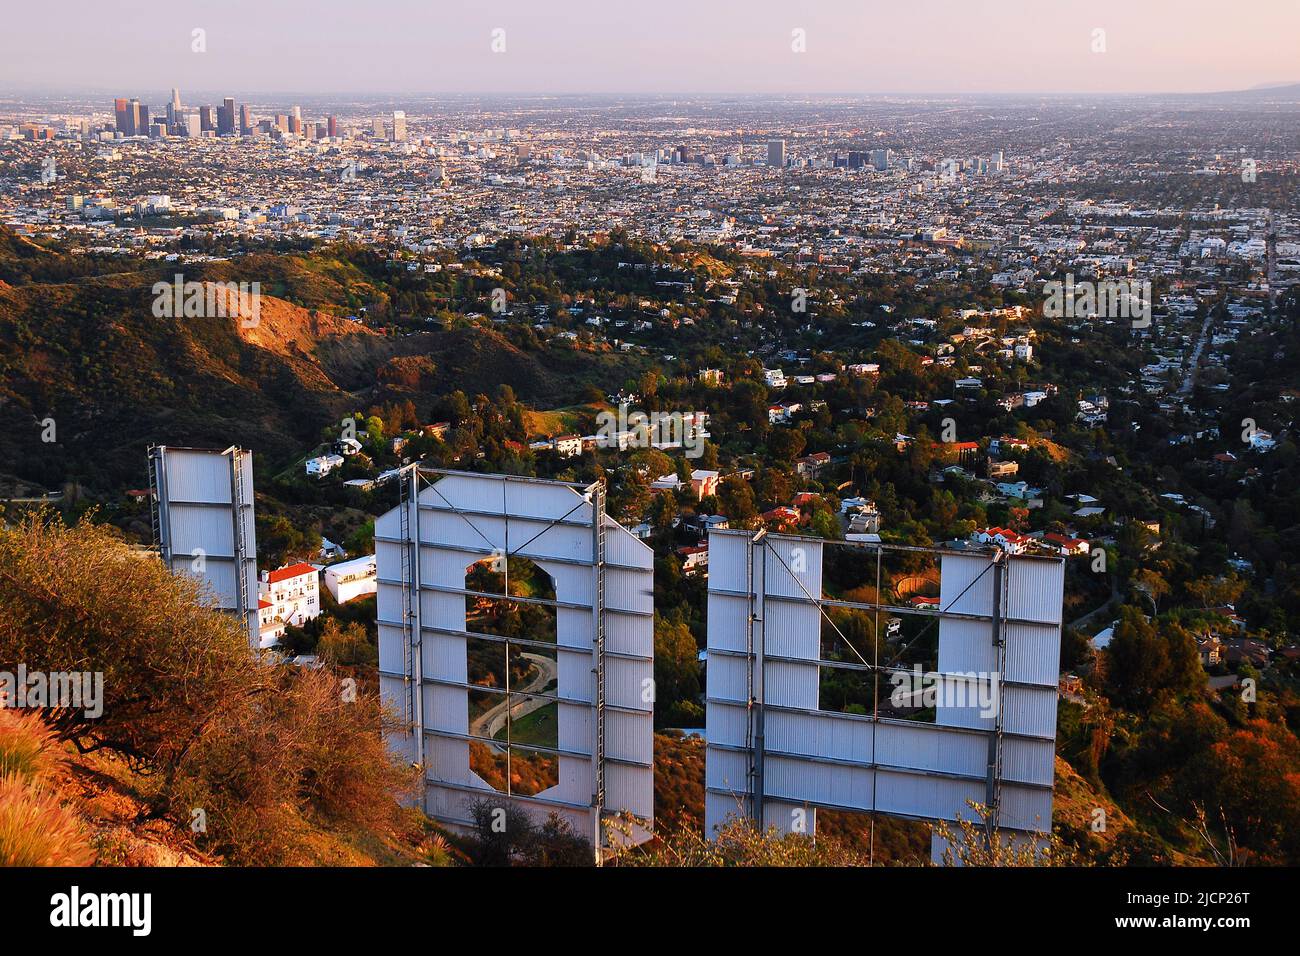 Le panneau Hollywood, symbole de l'industrie du cinéma, du cinéma et du divertissement, s'élève au-dessus de la ville de Los Angeles Banque D'Images